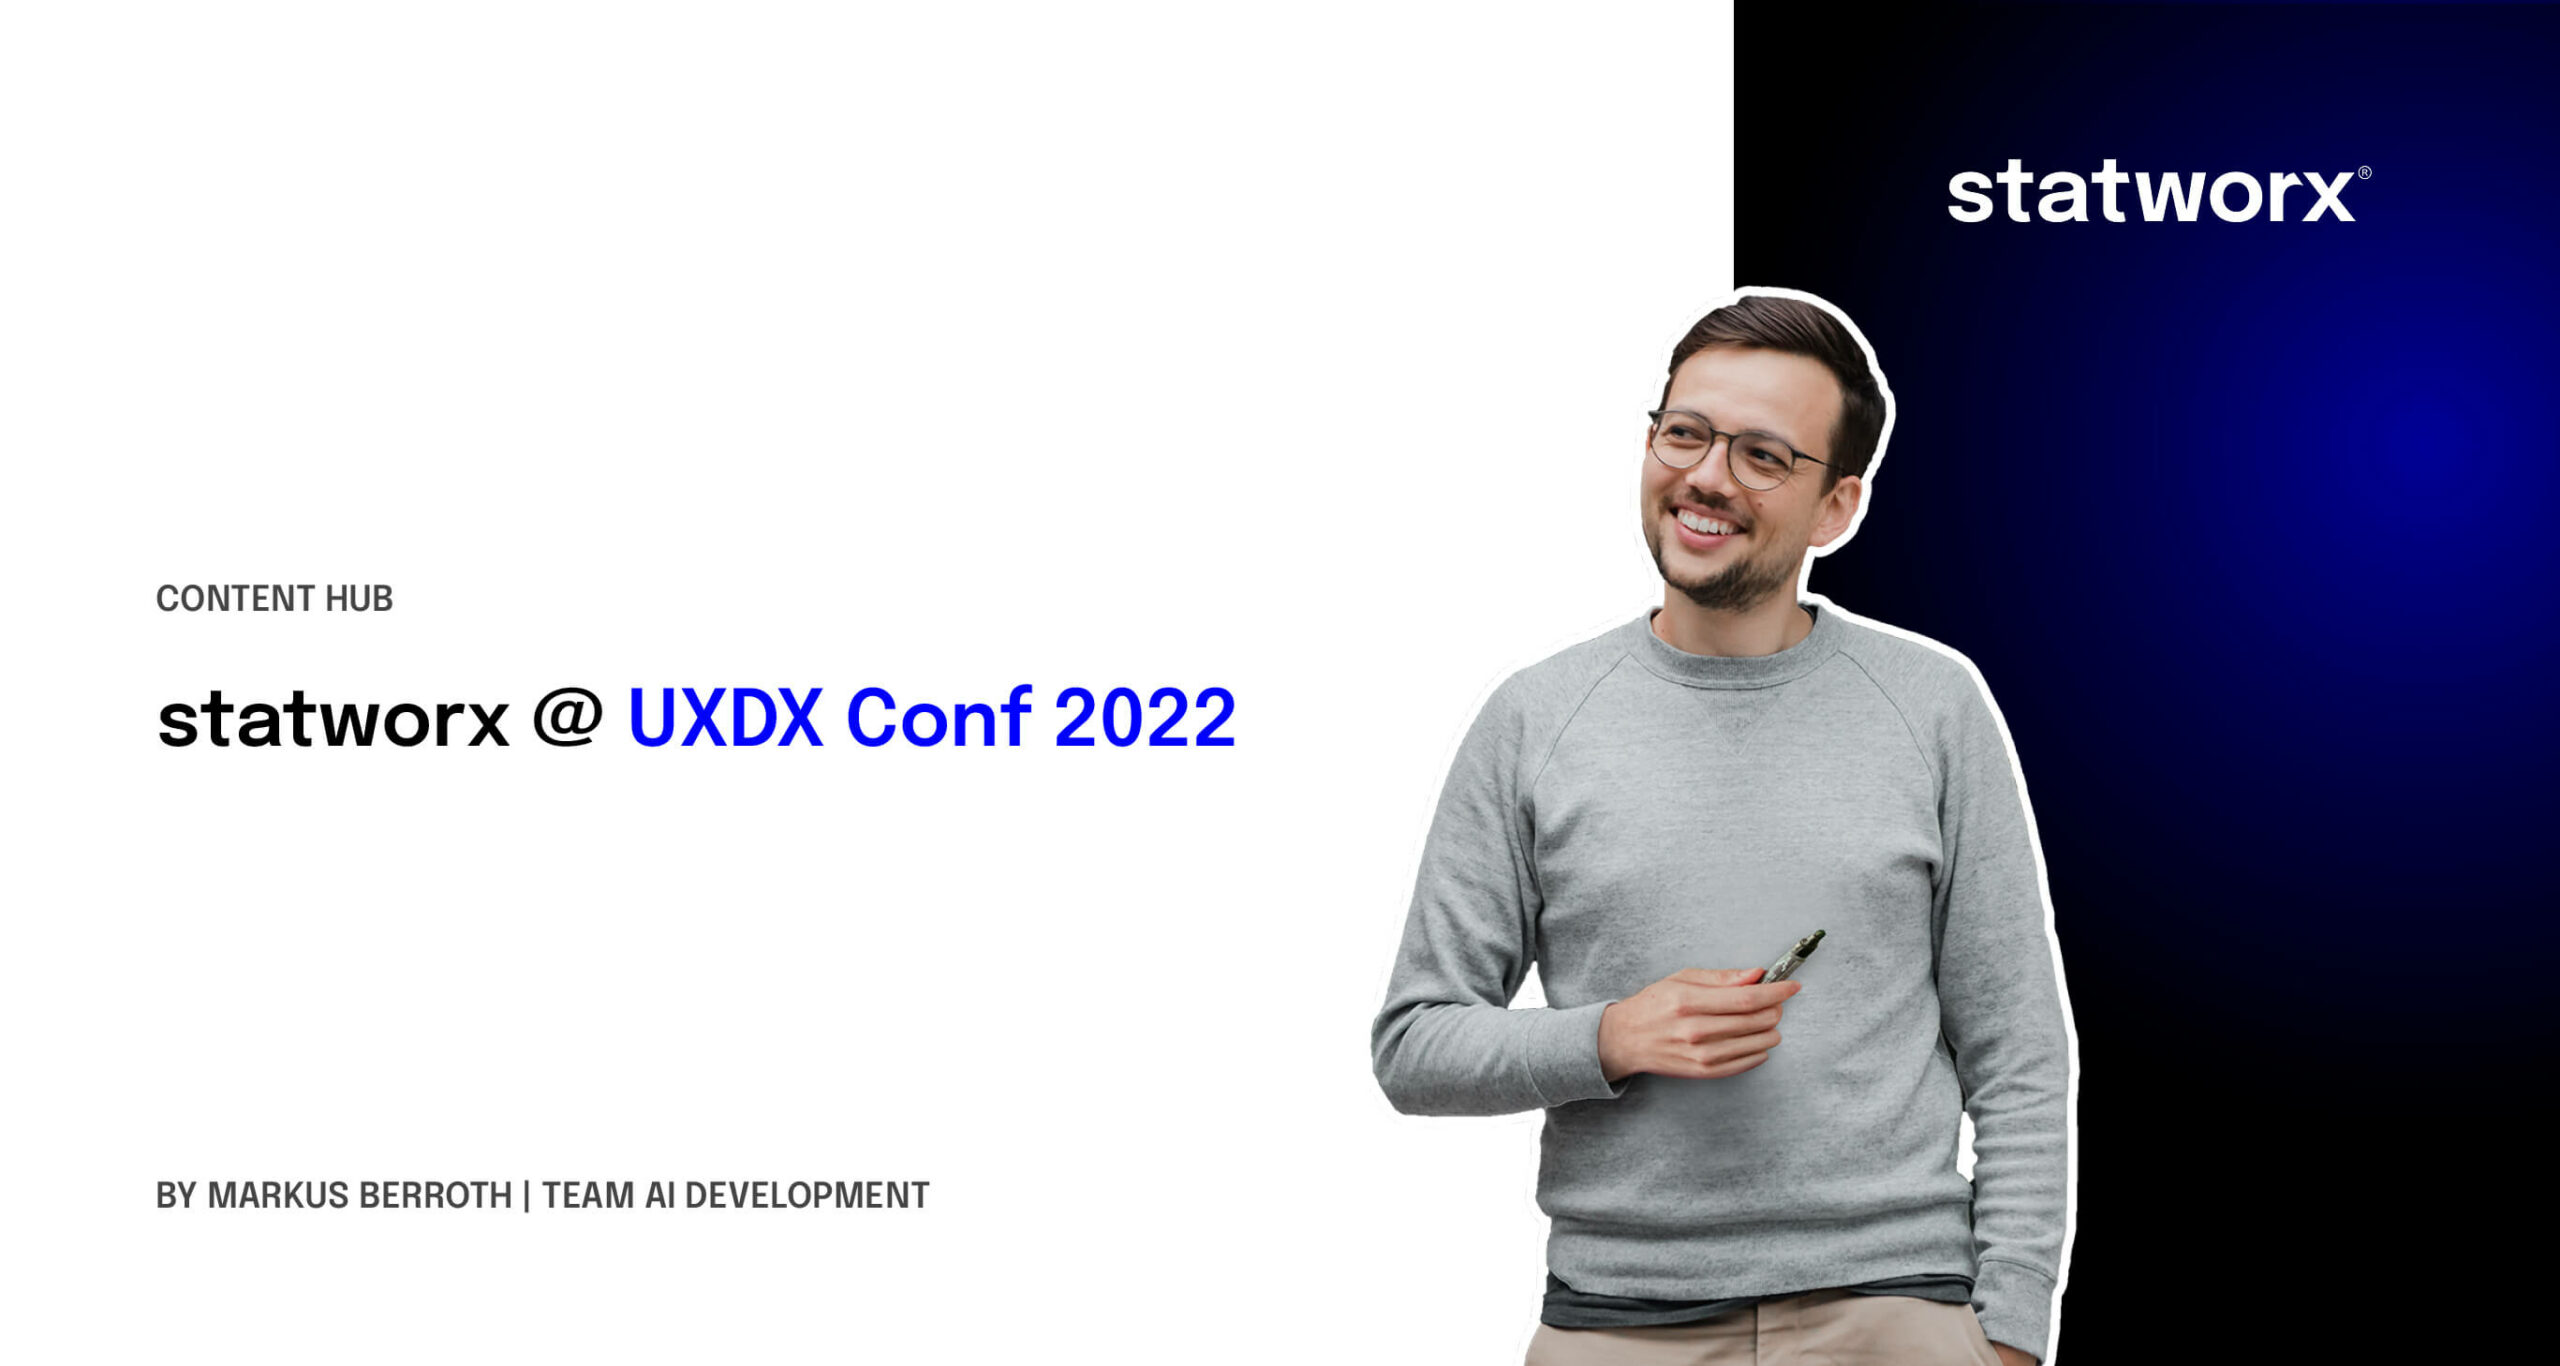 statworx @ UXDX Conf 2022 